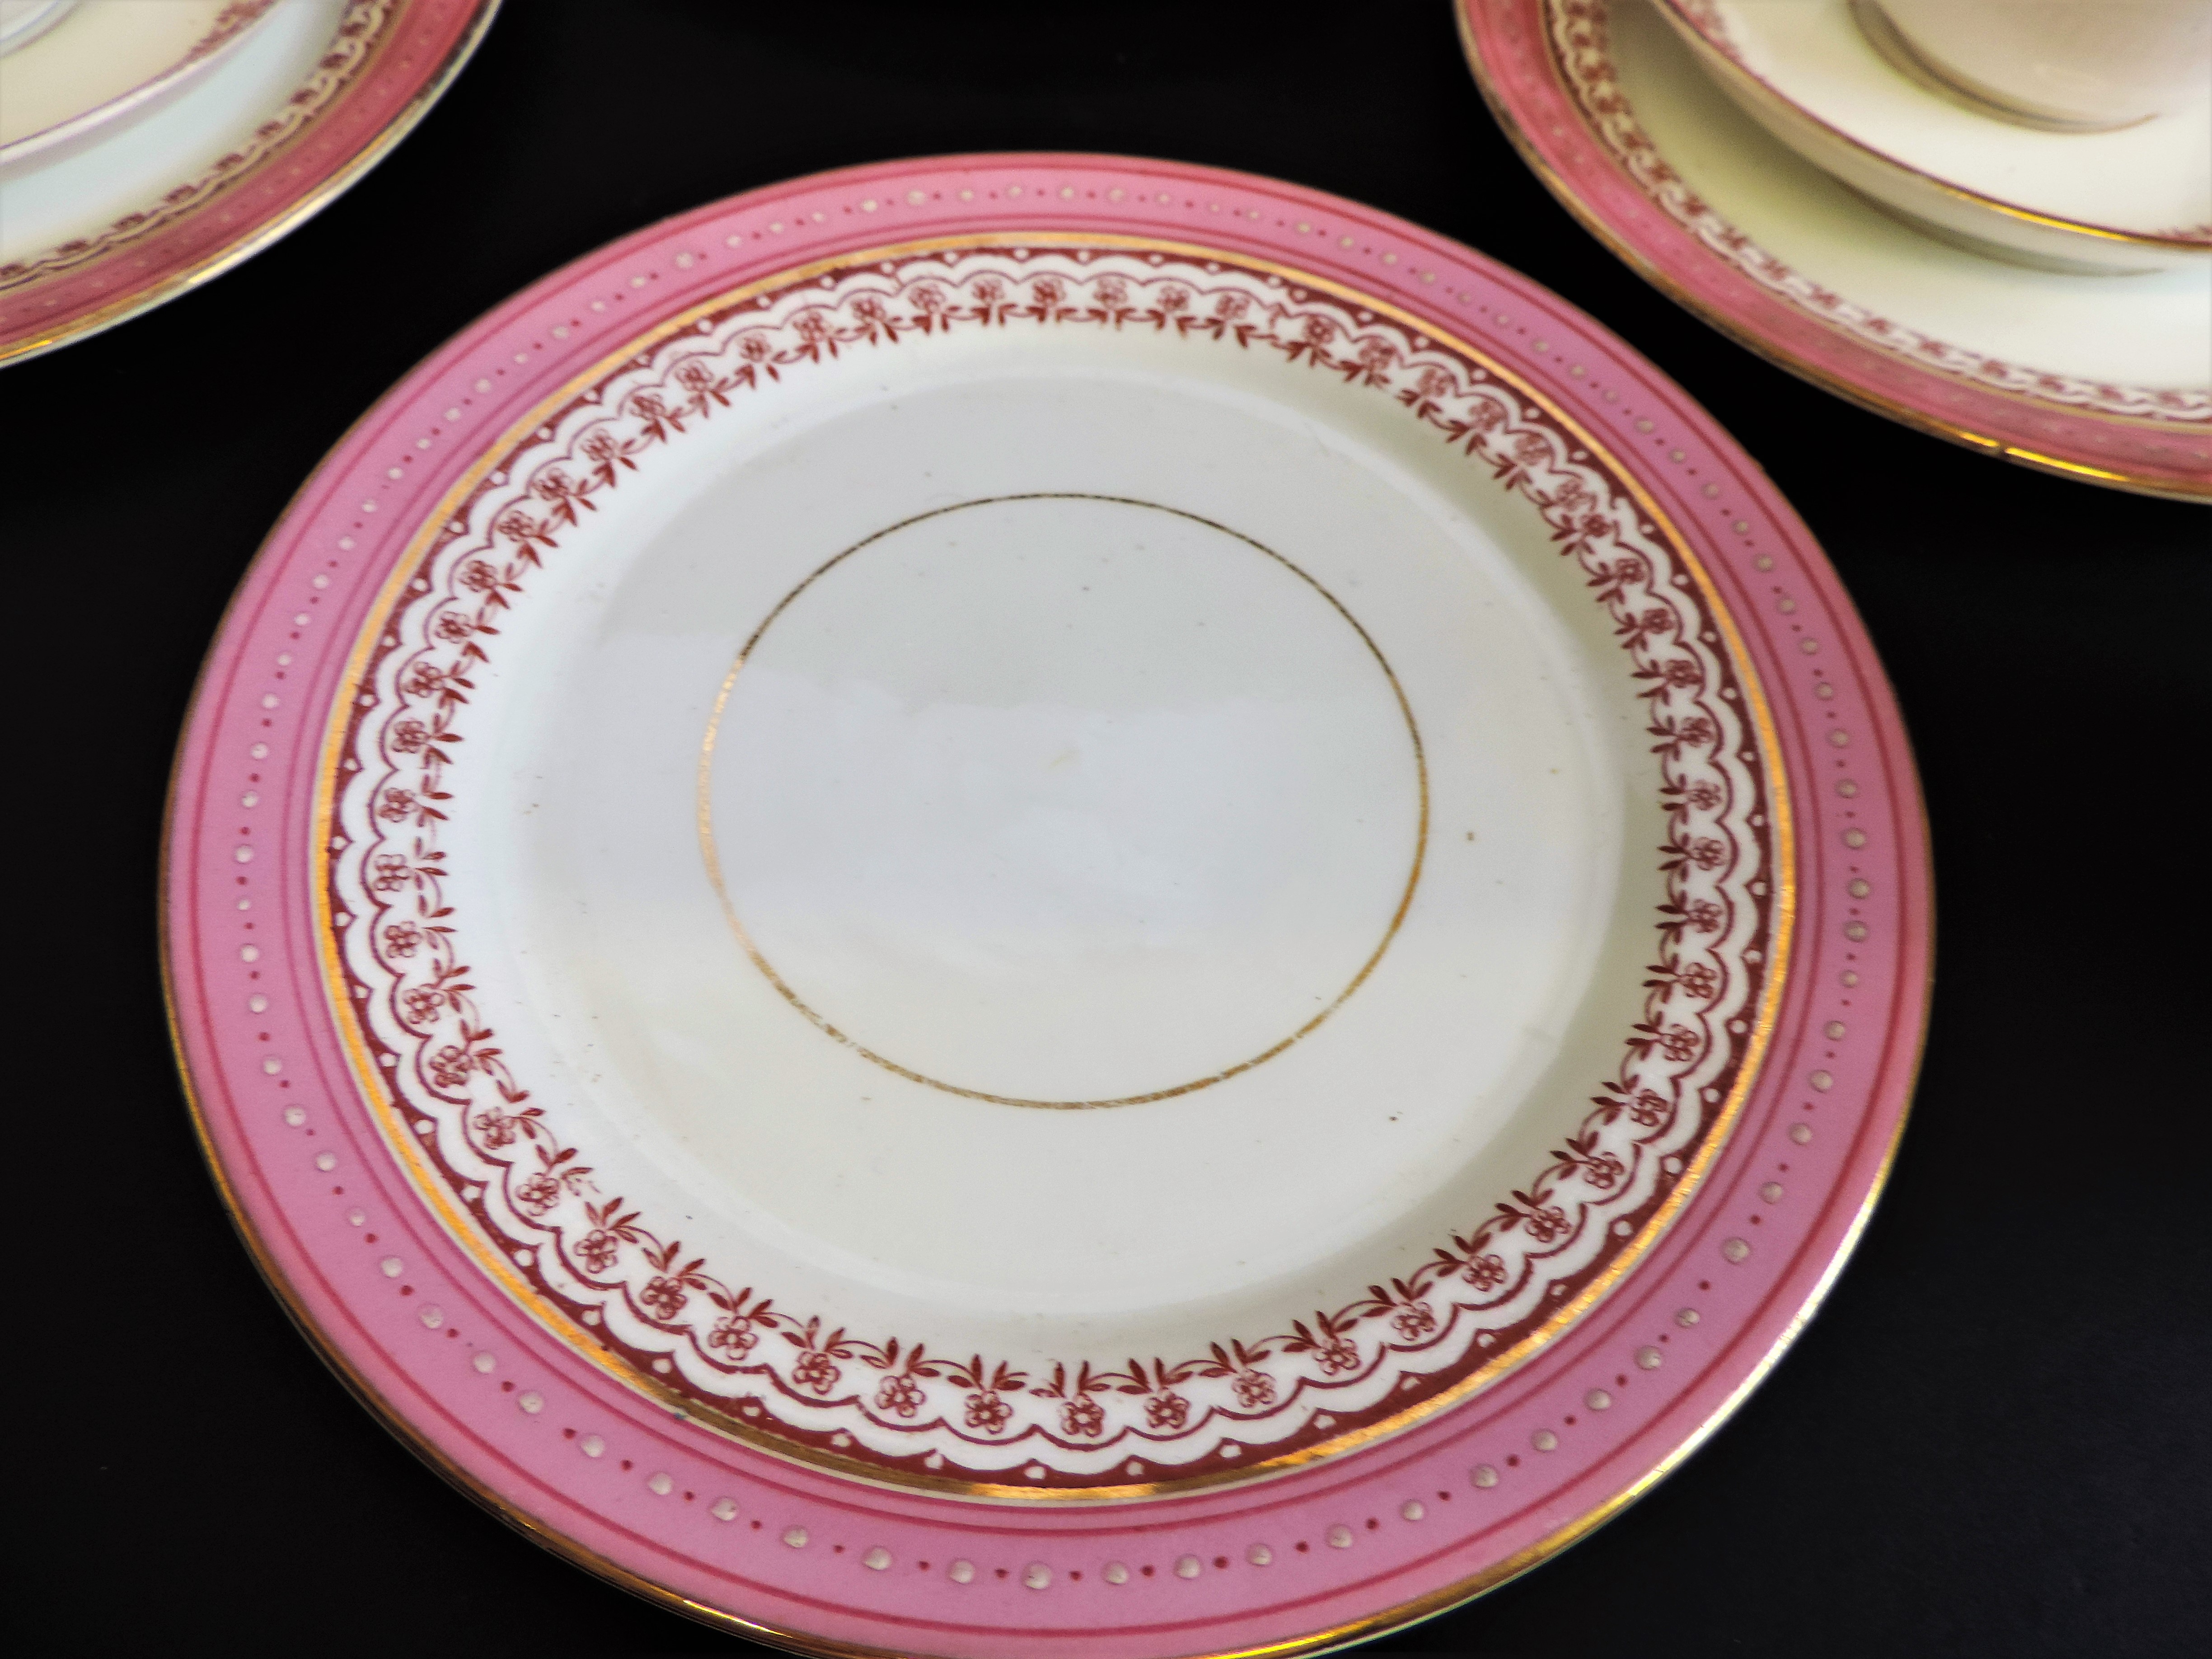 Vintage 19 piece Porcelain Breakfast/Tea Set for 4 People - Image 24 of 24